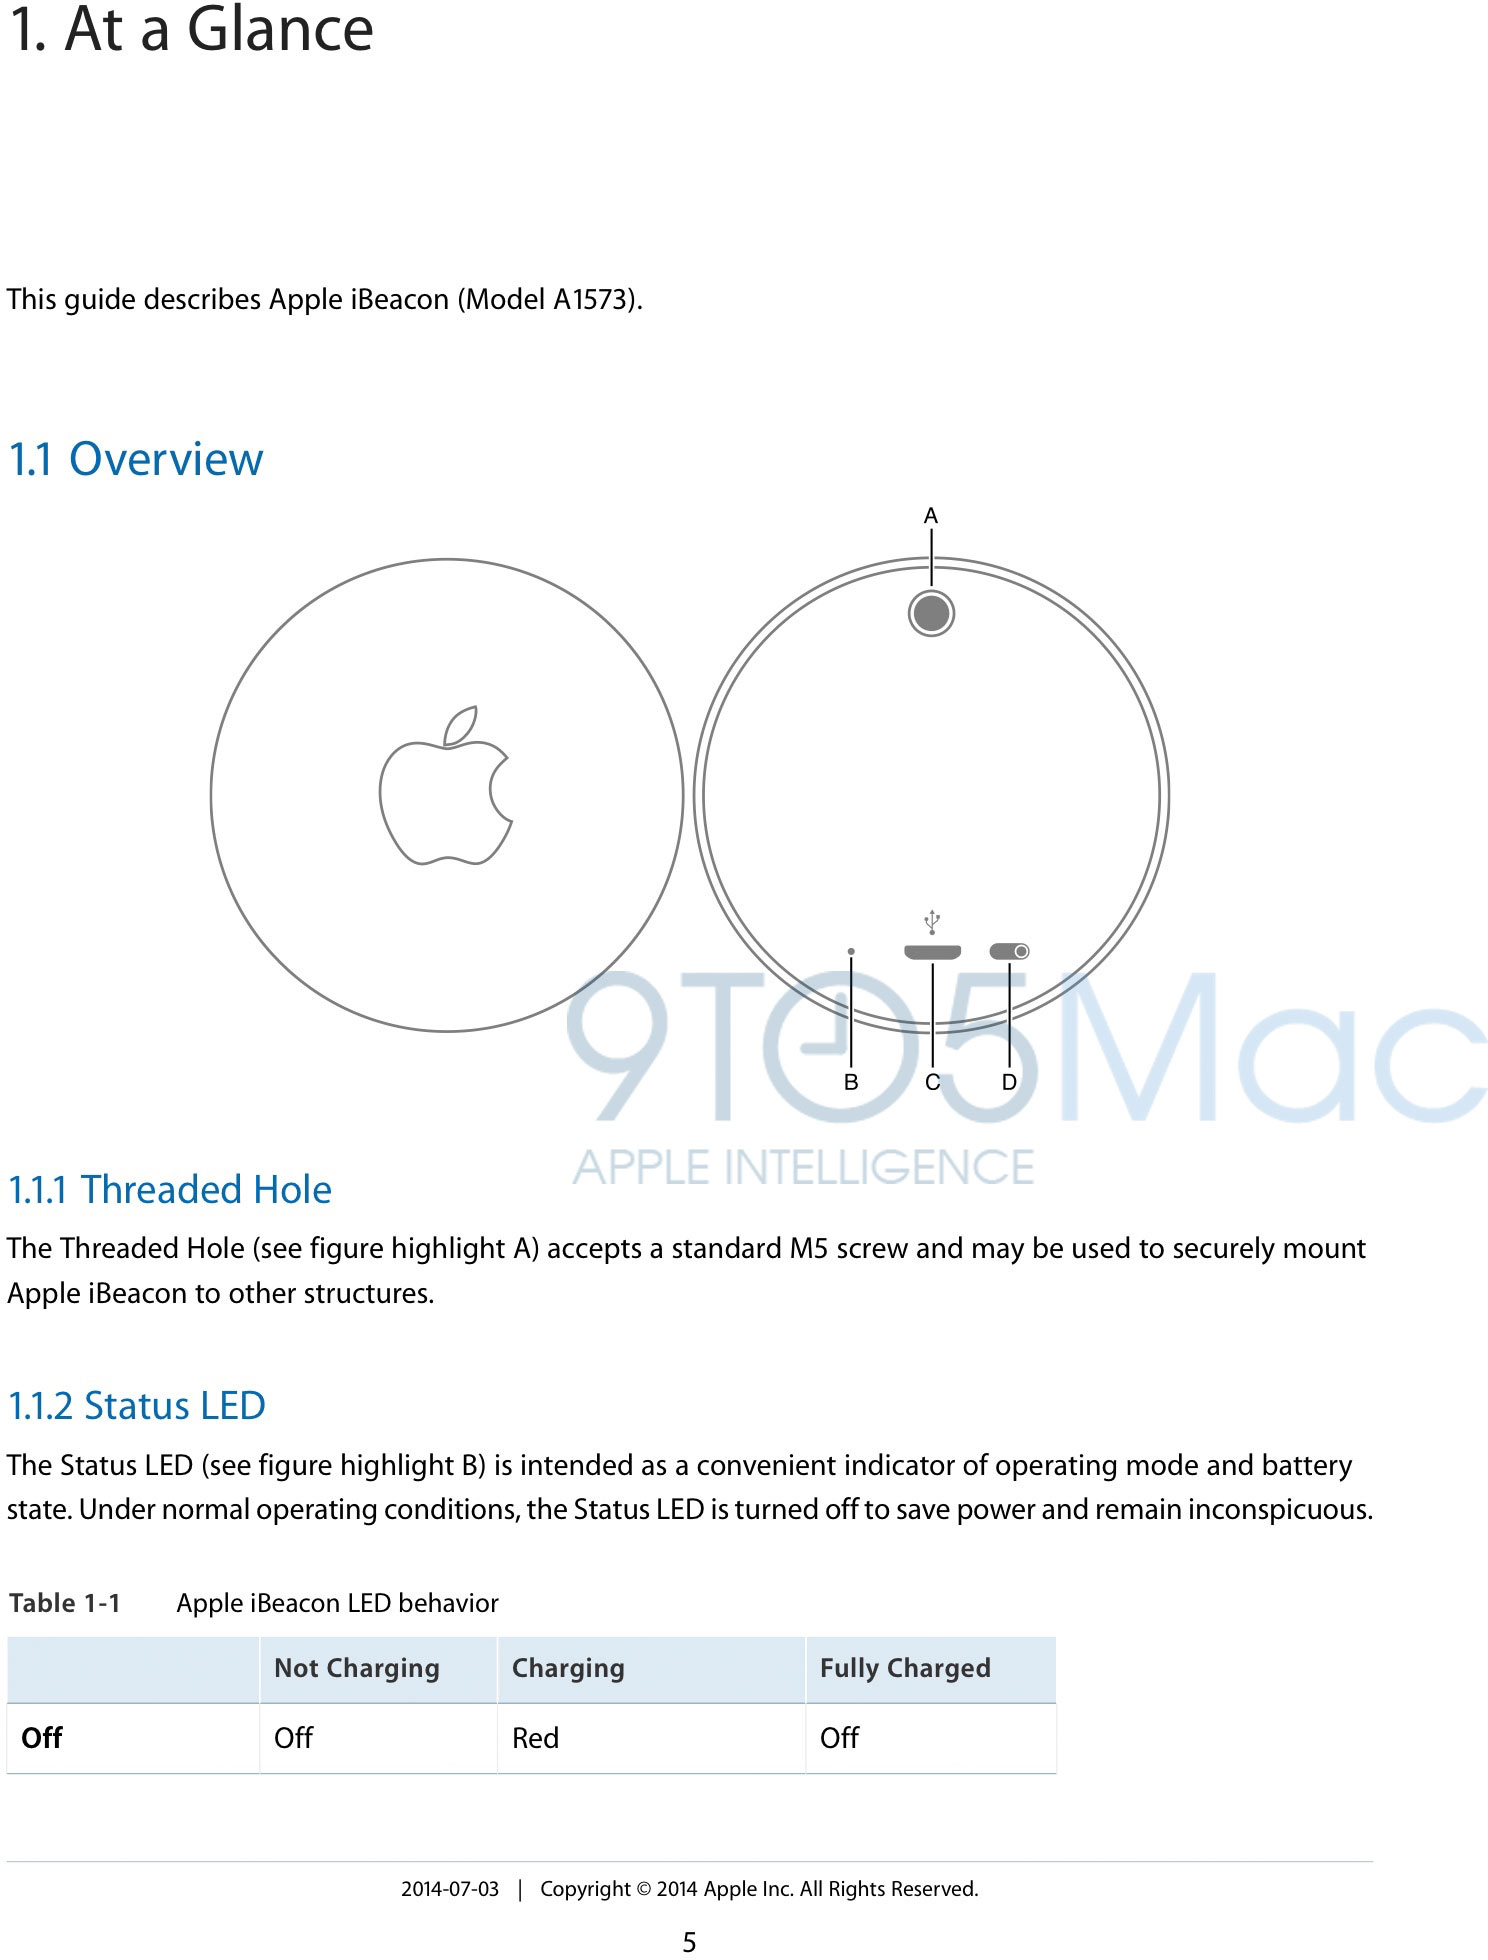 Manual do hardware de iBeacon da Apple